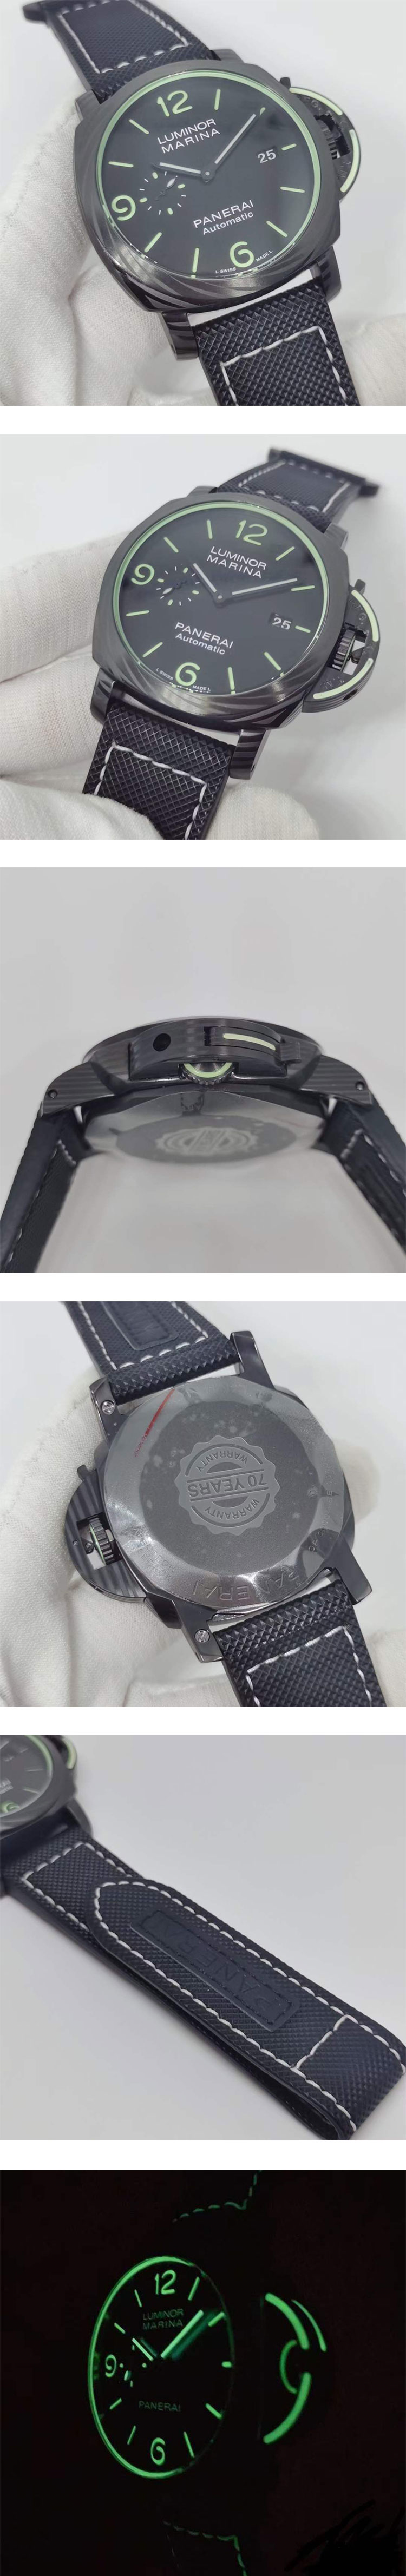 パネライコピー時計PAM01118 ルミノール マリーナ カーボテック  世界270本 信頼の腕時計ストア